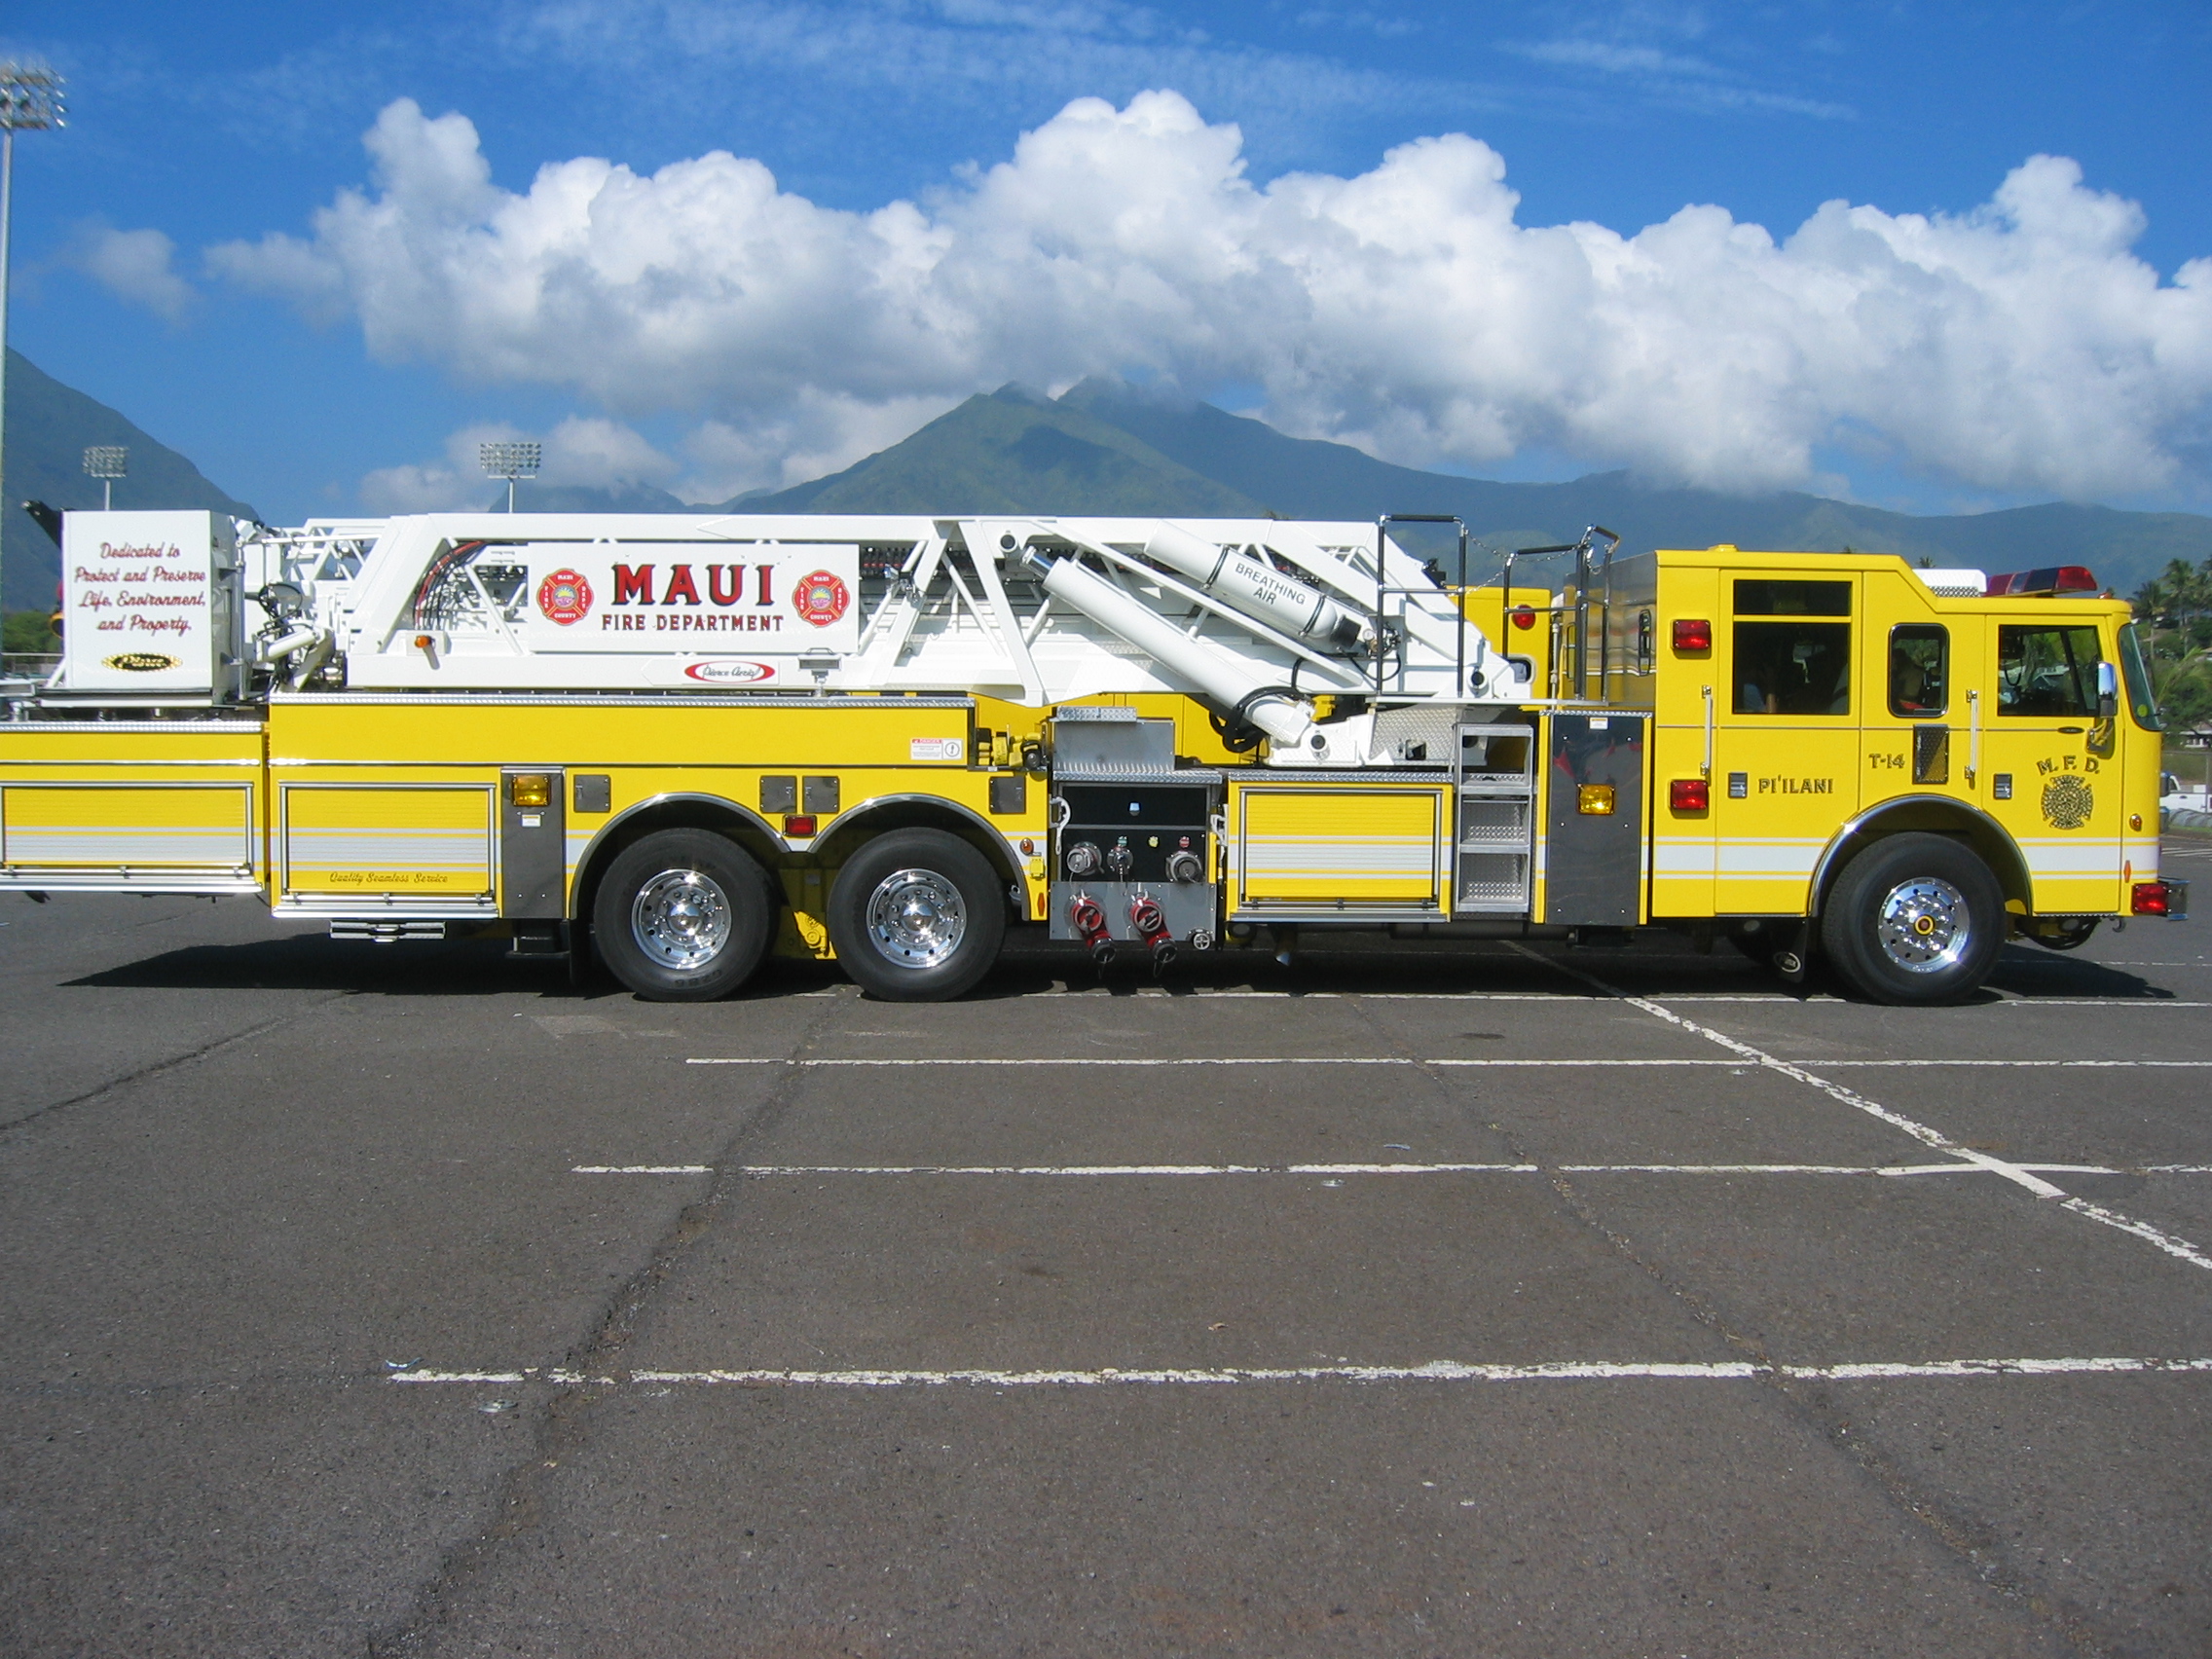 vehicles, fire truck, fire engine